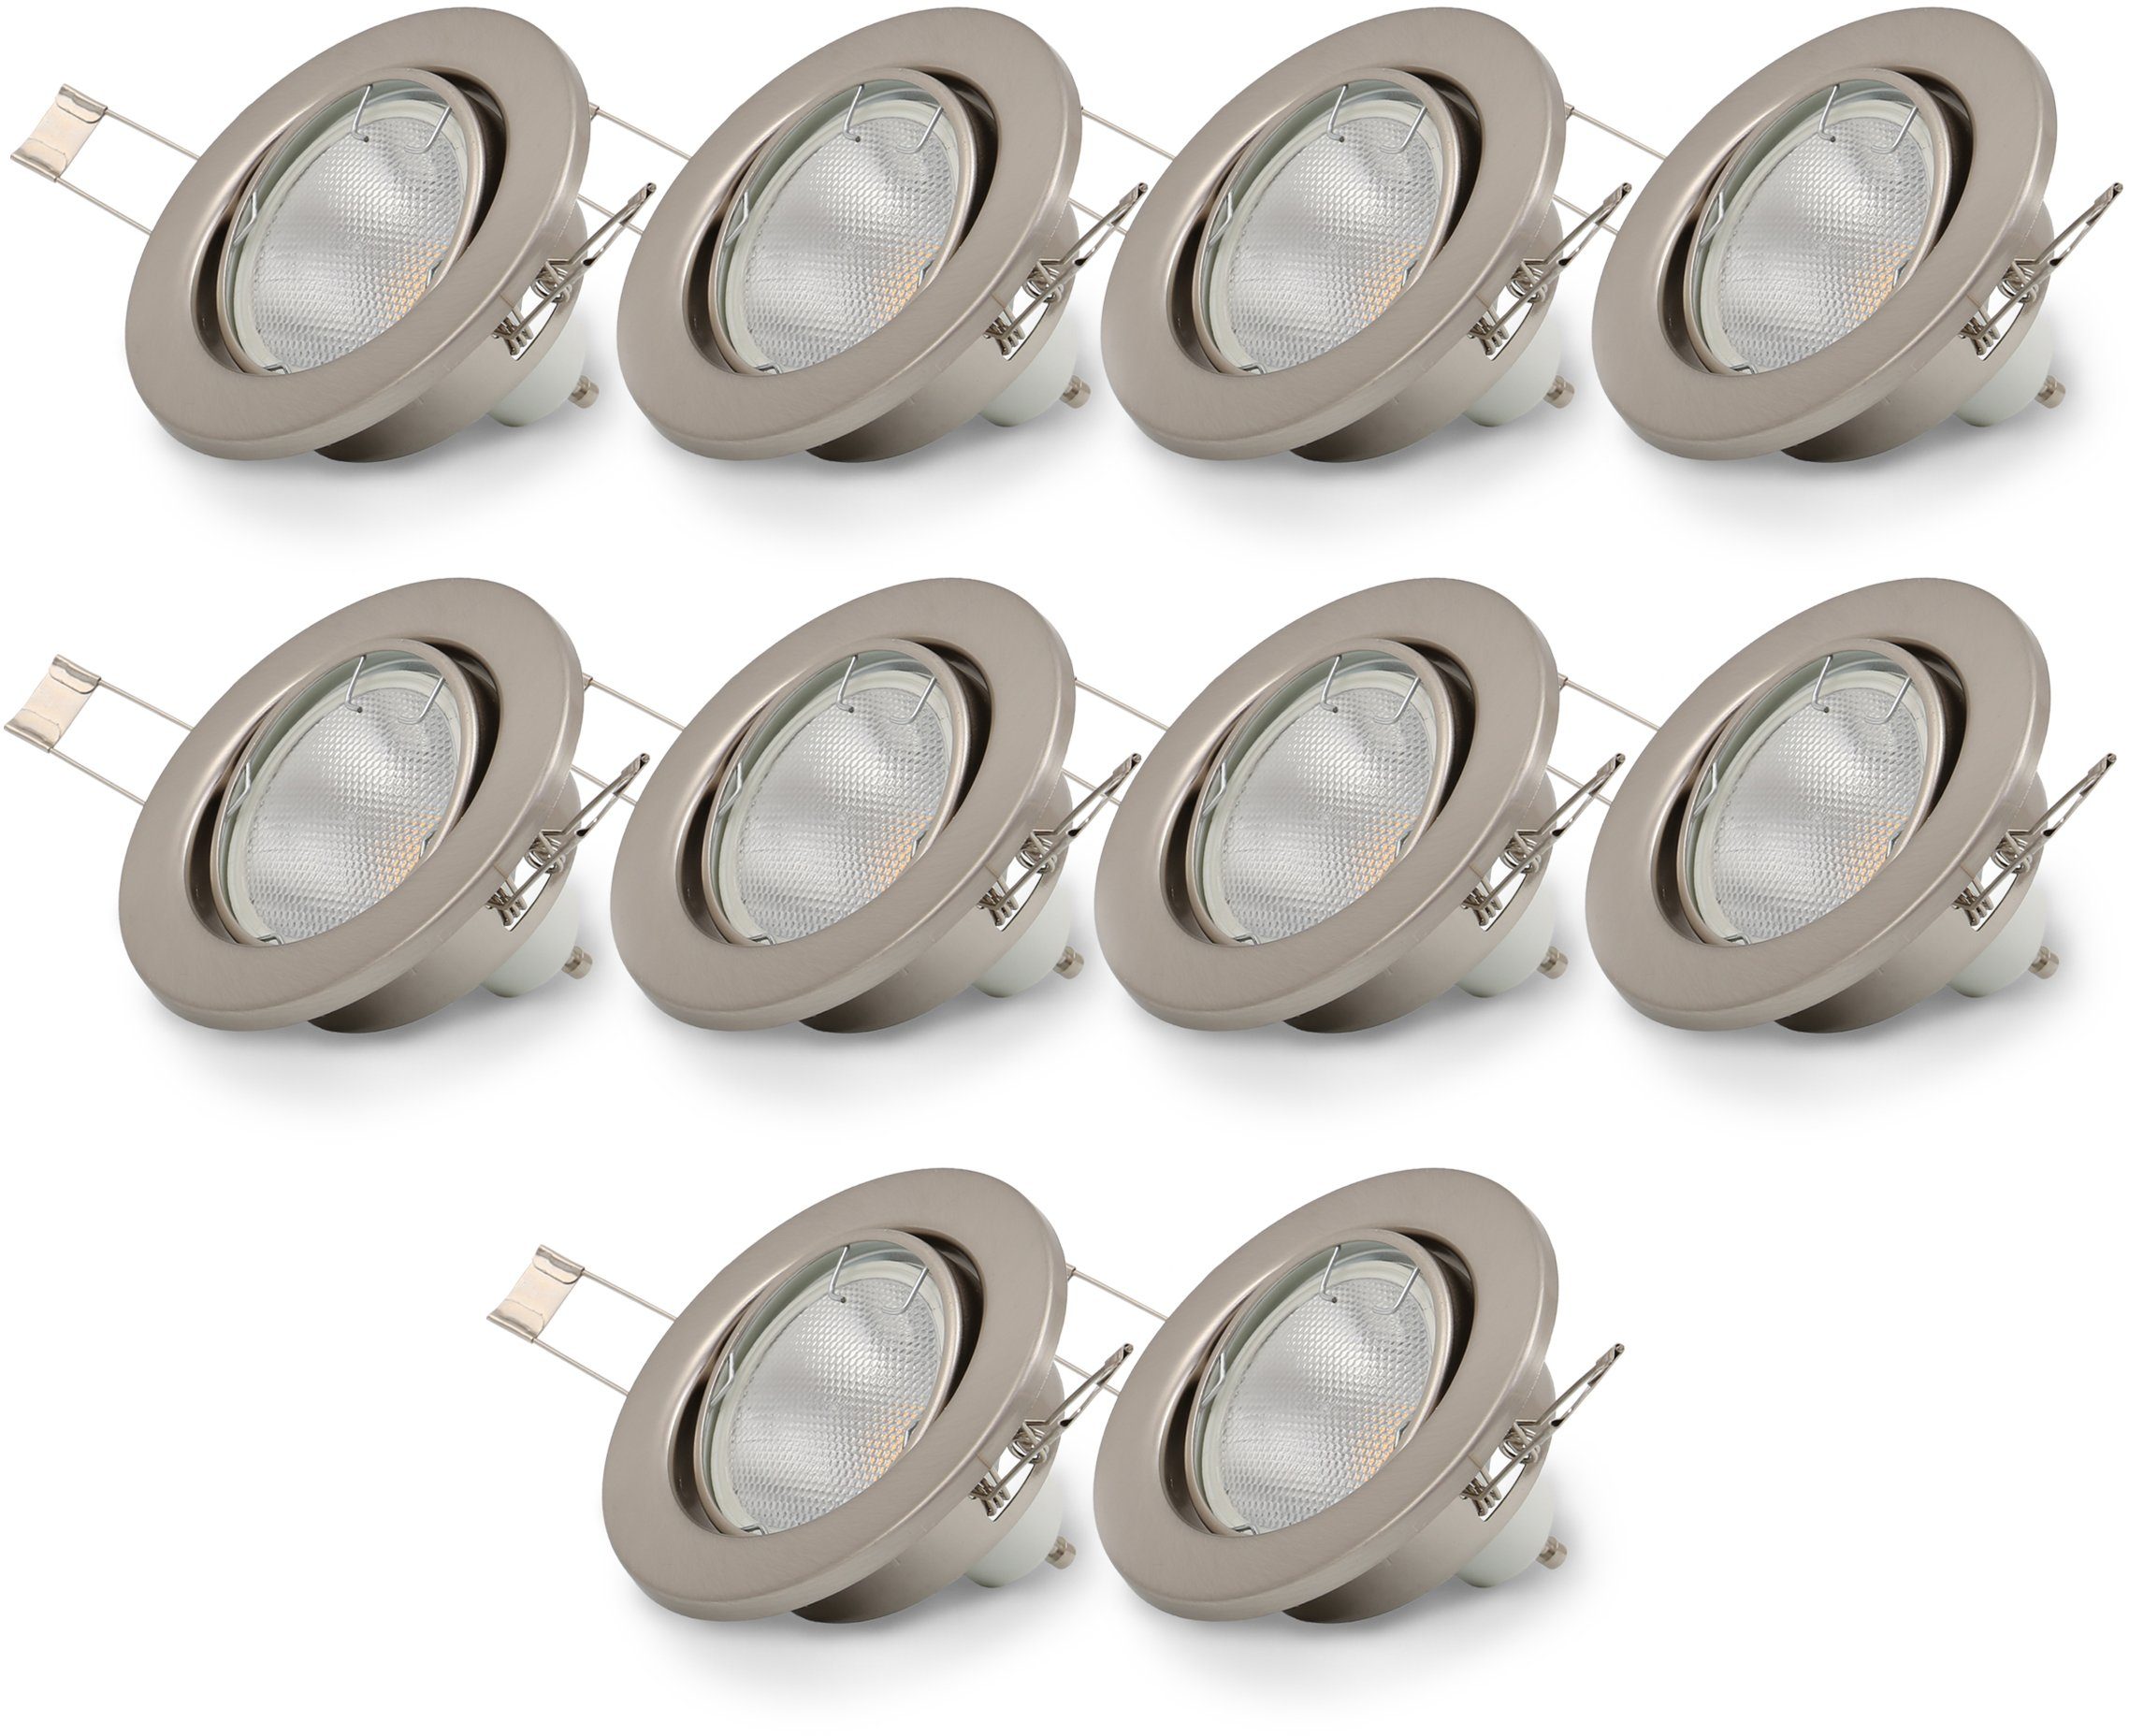 B.K.Licht LED Einbaustrahler, LED wechselbar, nickel, GU10 Einbau-Spots, matt LED Einbauleuchten, Warmweiß, schwenkbar